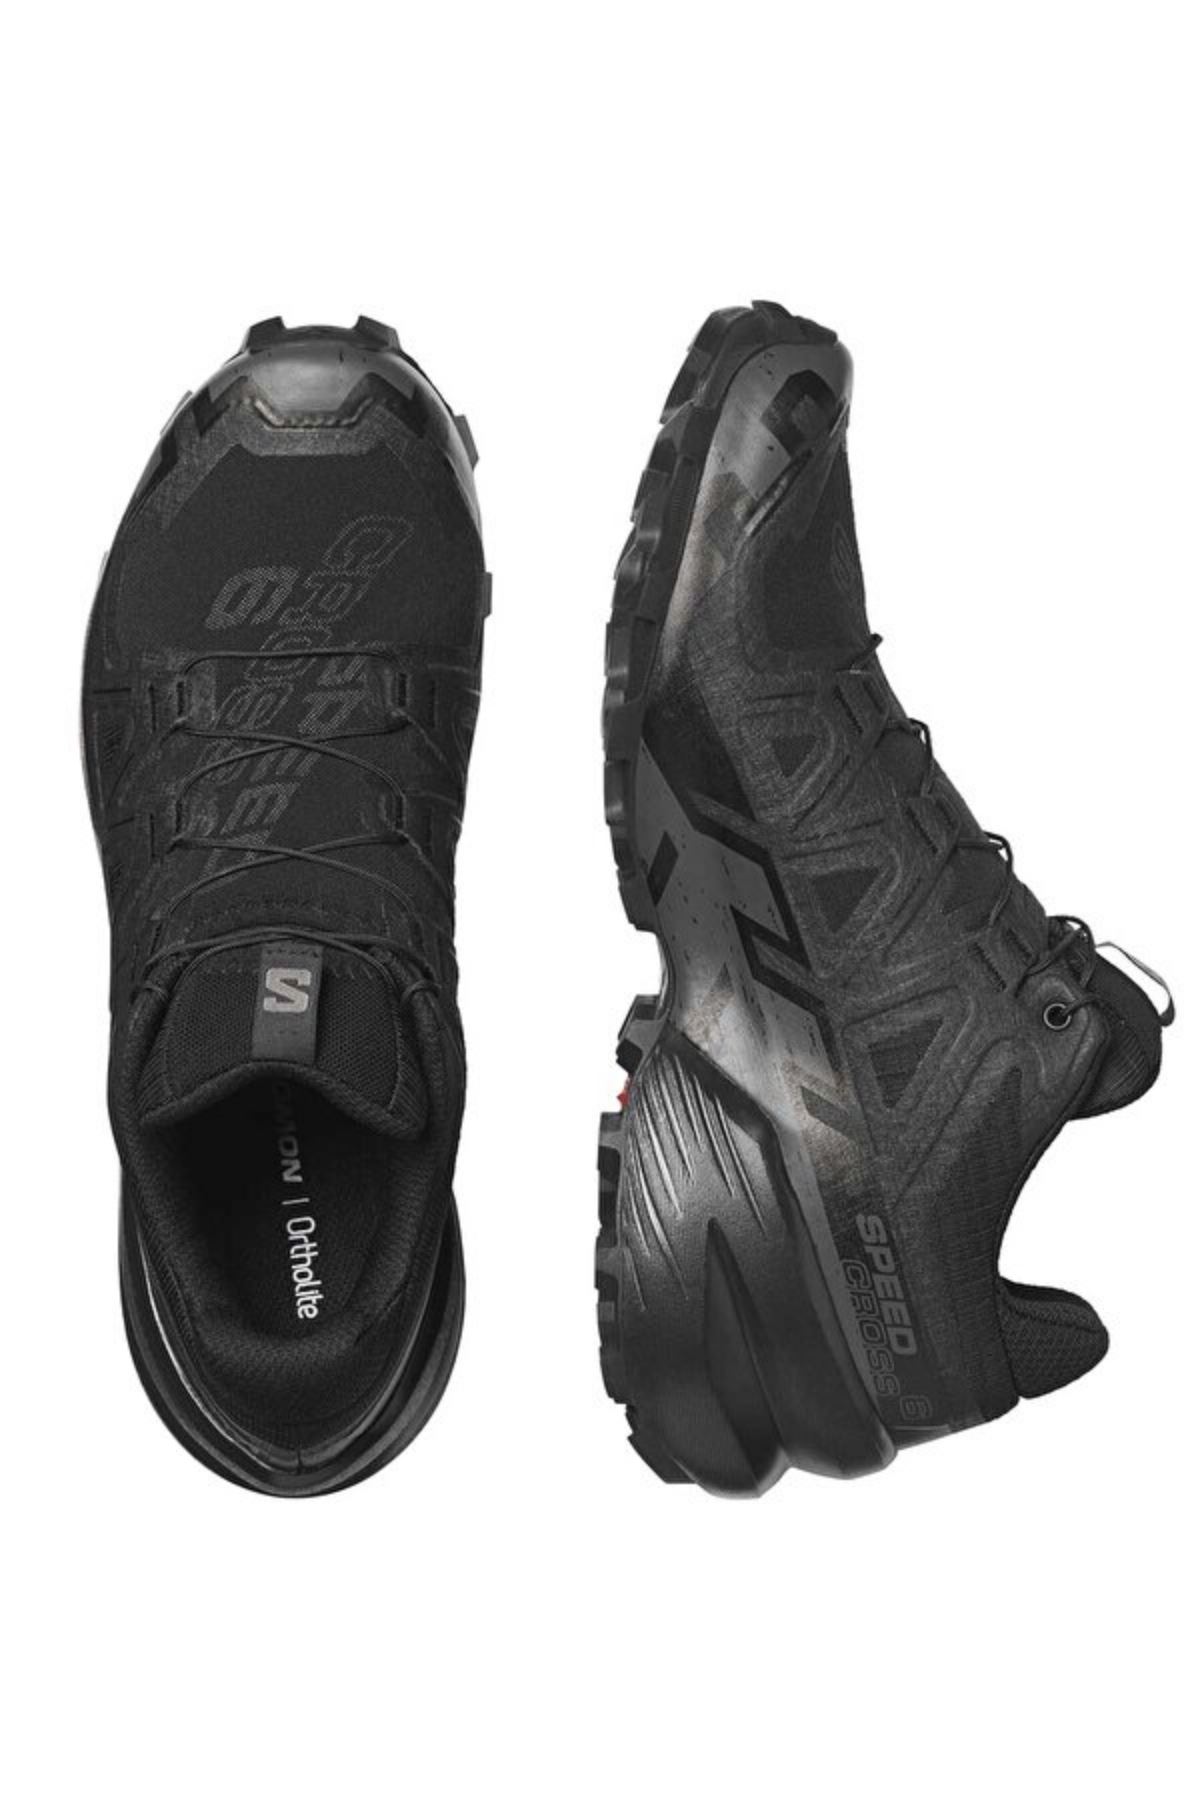 Speedcross 6 Kadın Siyah Spor Ayakkabı - L41742800